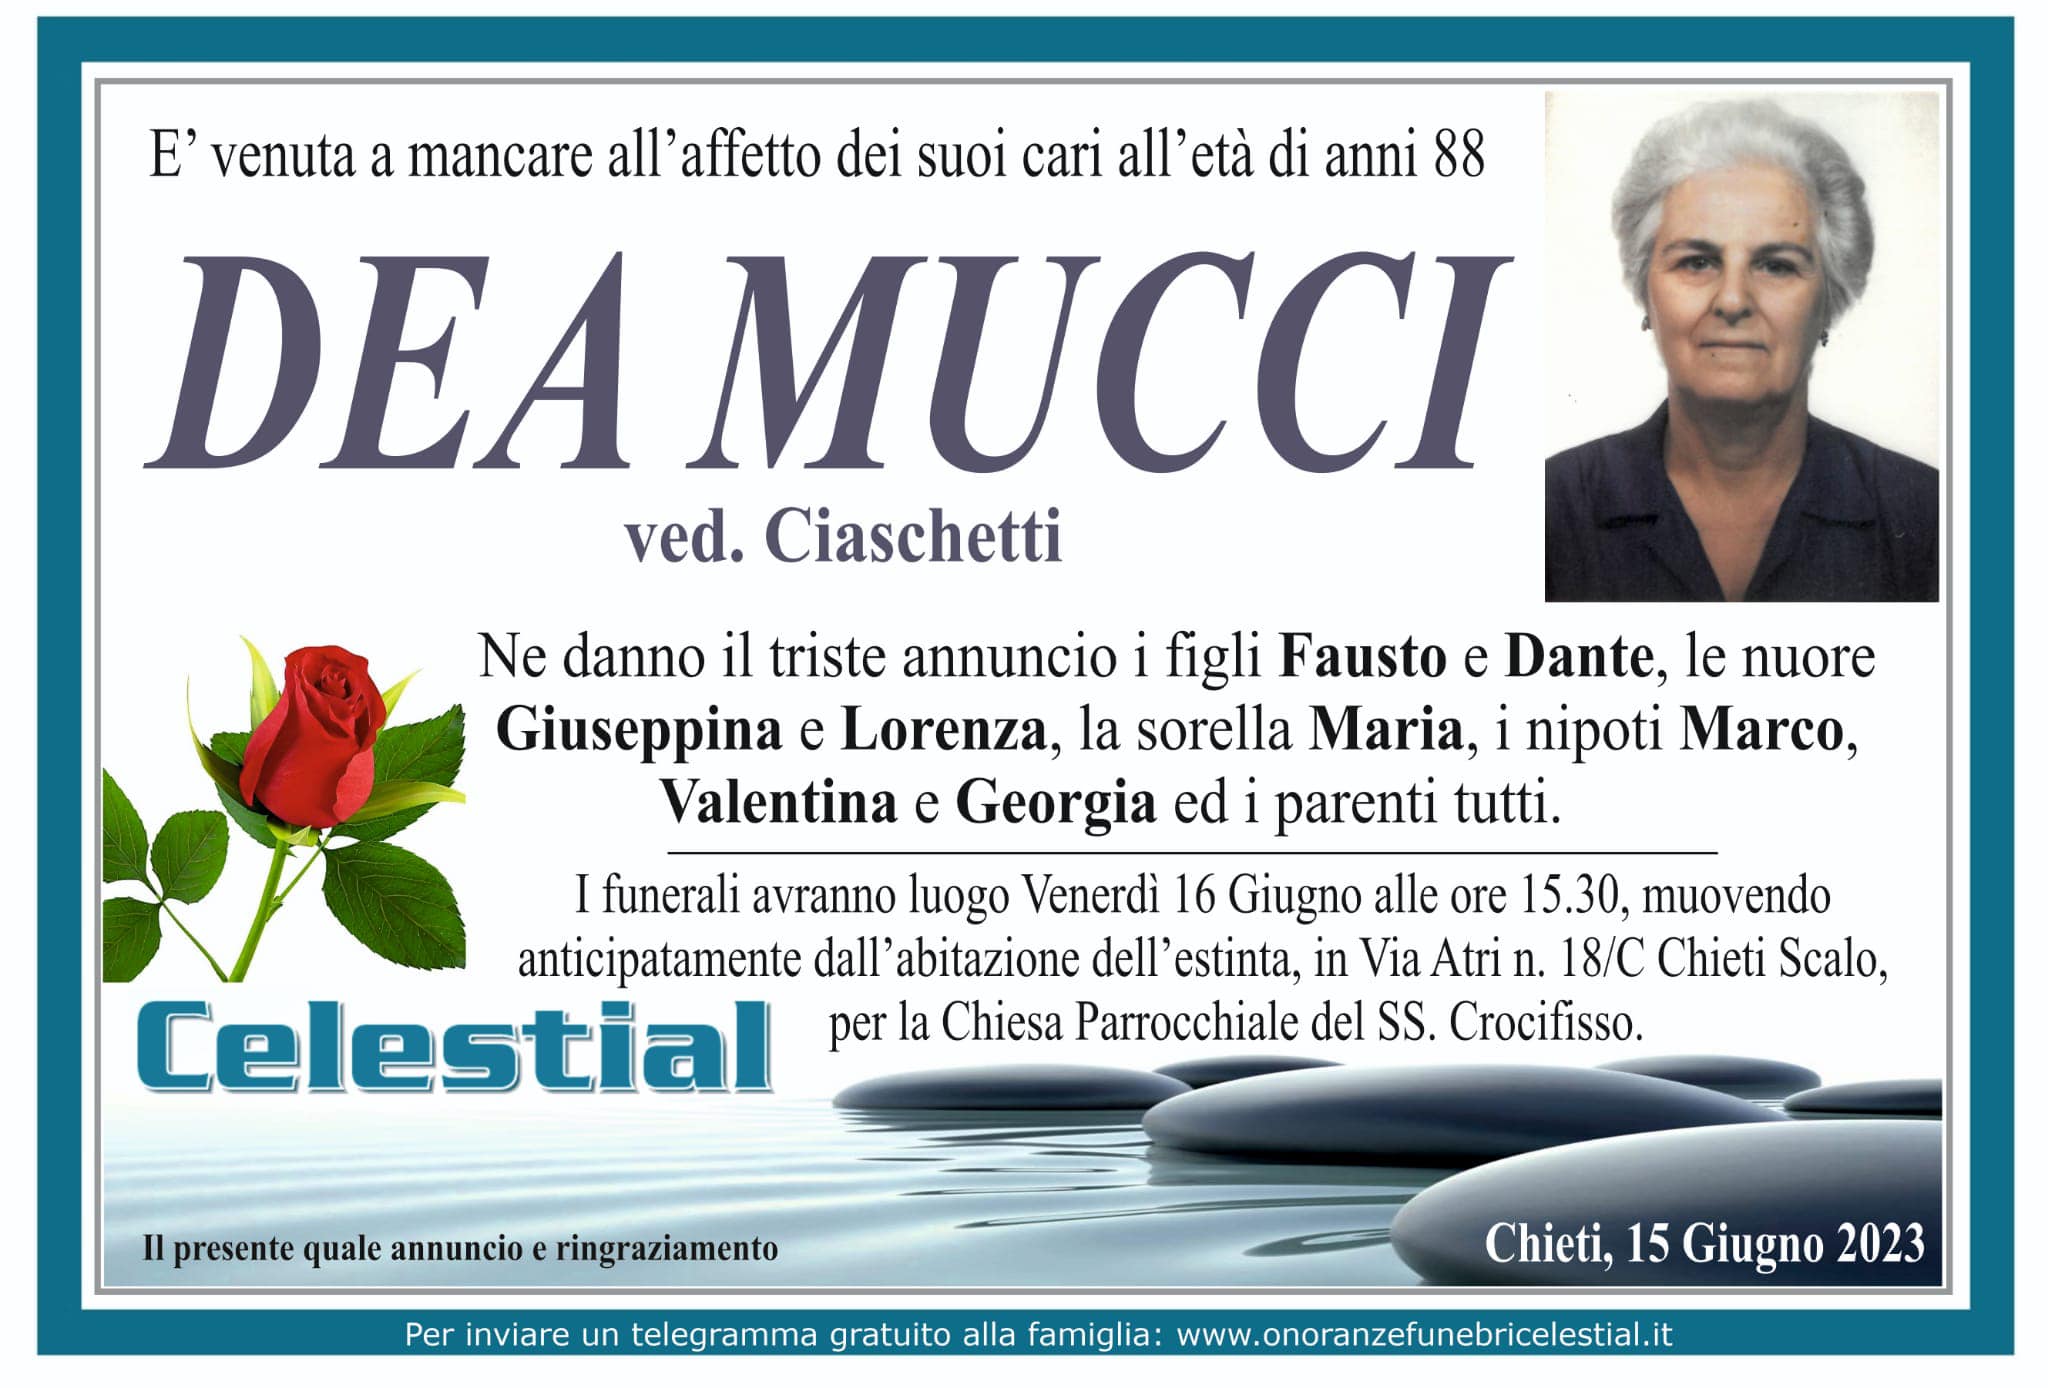 Dea Mucci